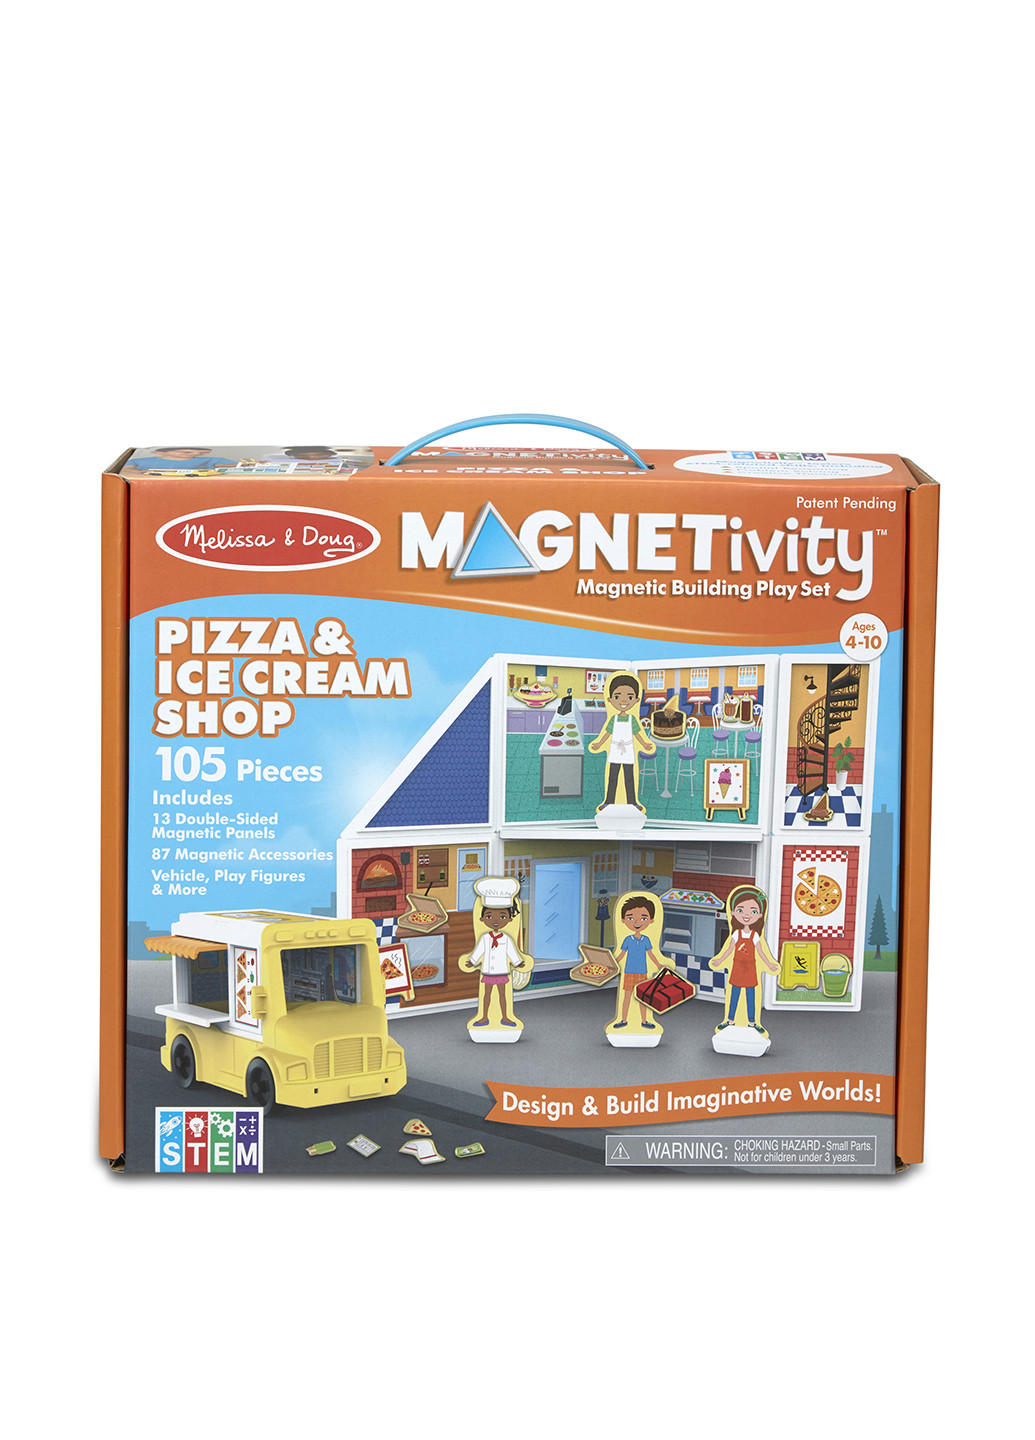 Игровой магнитный набор Магазин пиццы и мороженого, 33х28х11,5 см Melissa & Doug (251711300)